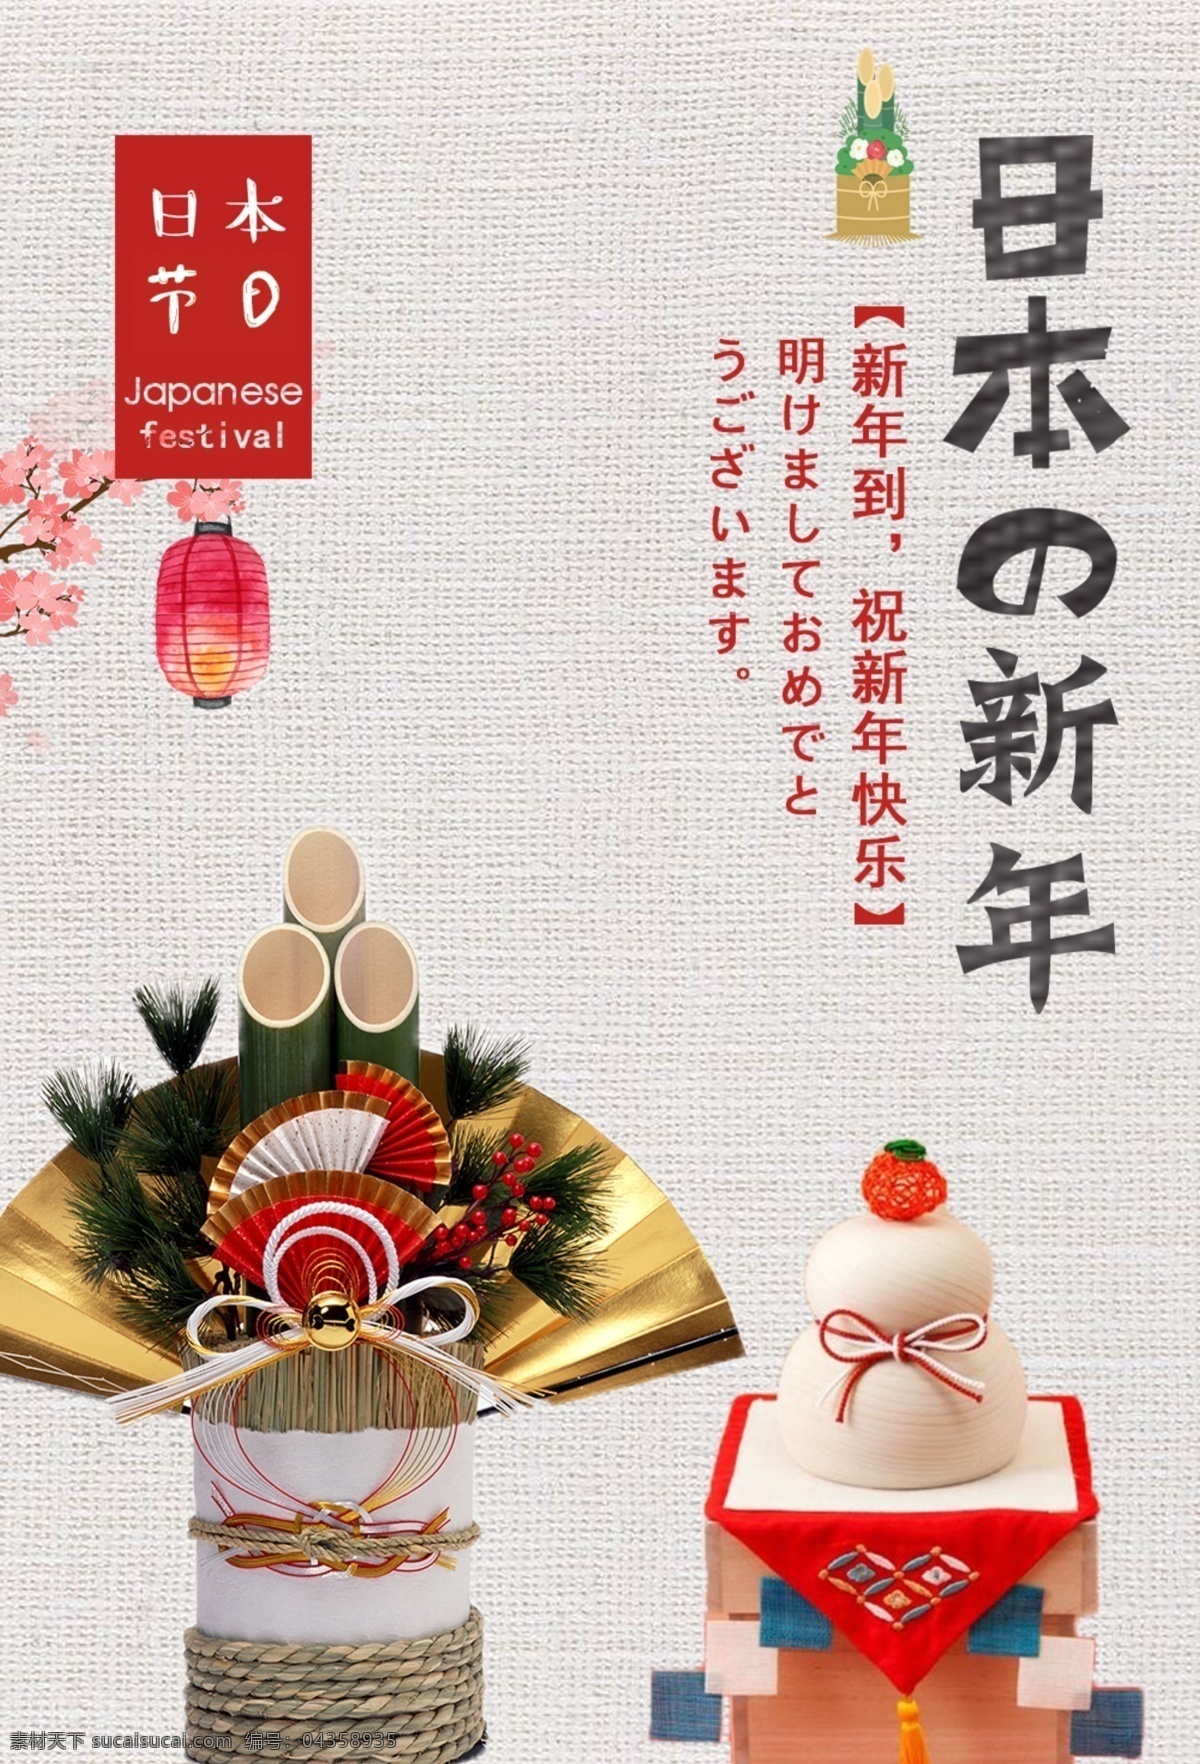 日本的新年 日本 新年 恭贺新春 日本节日 新年到 祝福新年快乐 文化艺术 节日庆祝